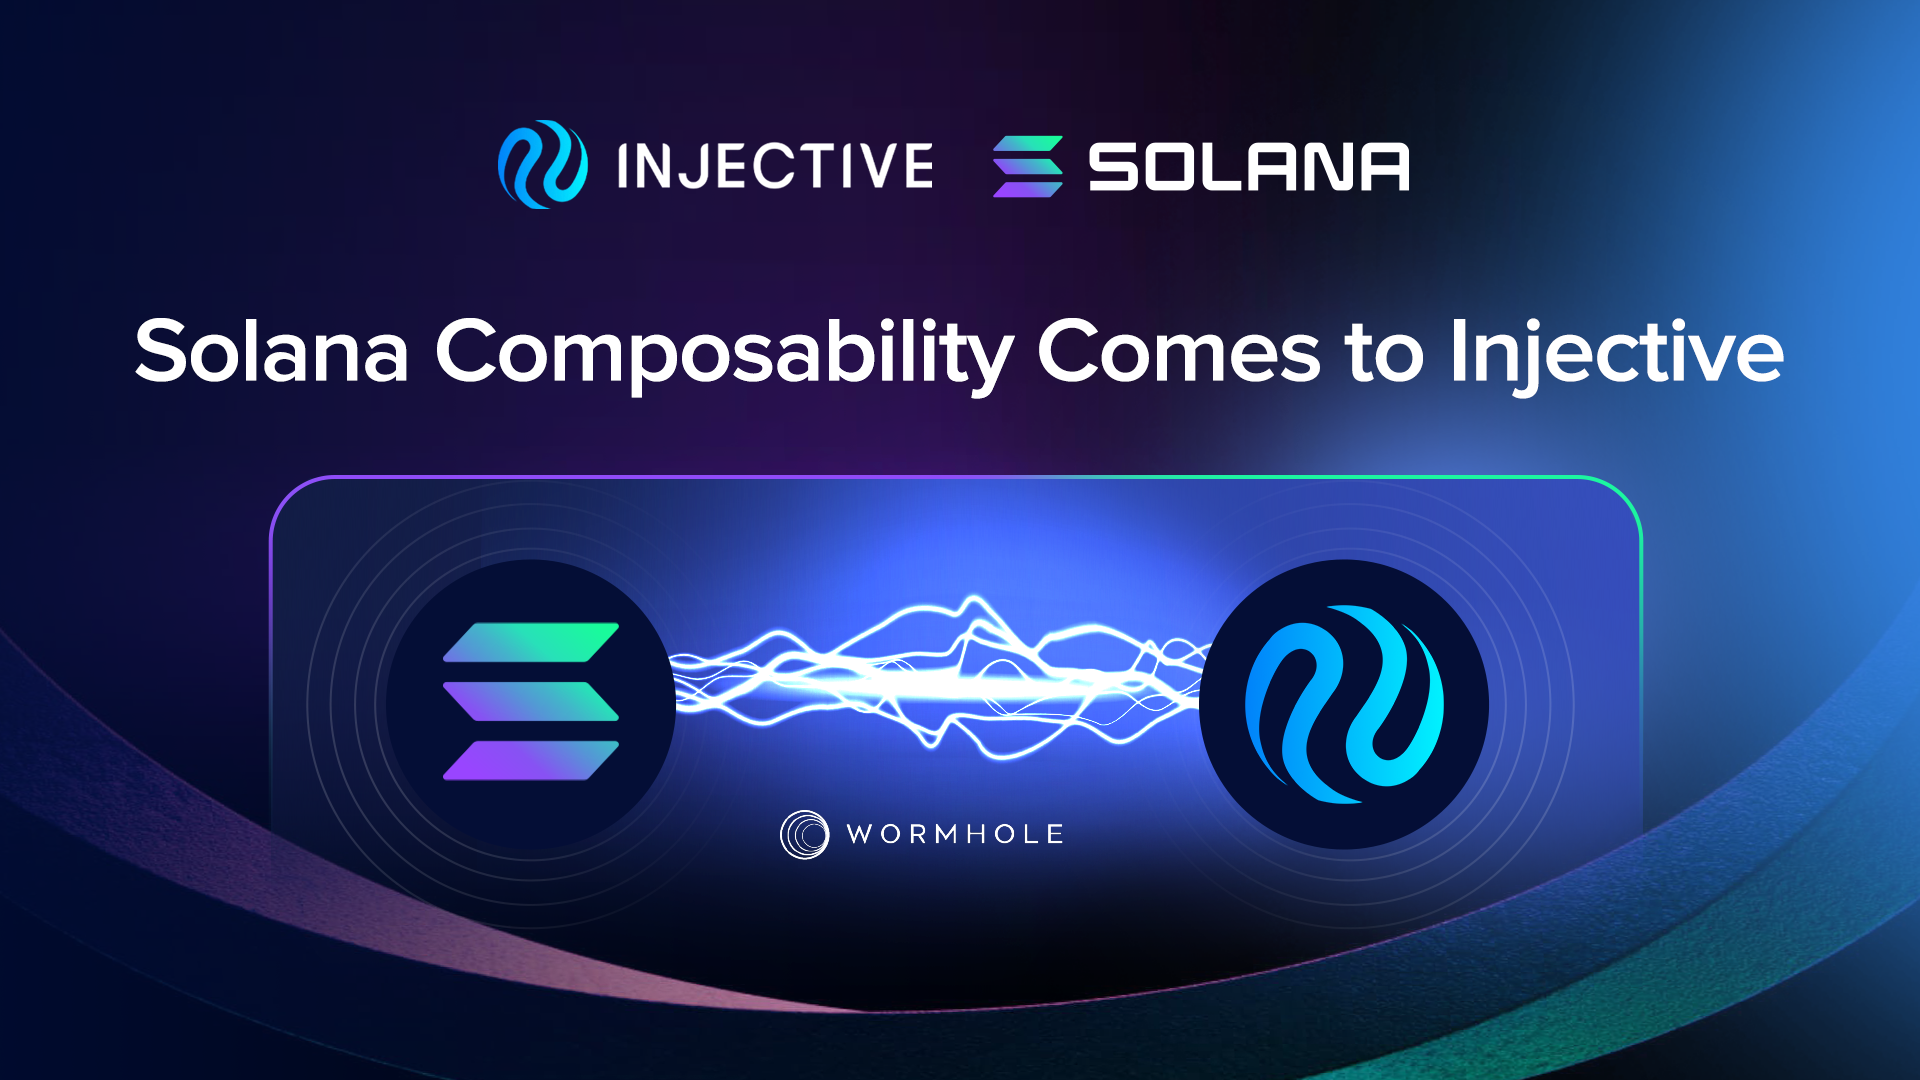 Injective 集成 Solana 资产以引入可组合性的新时代